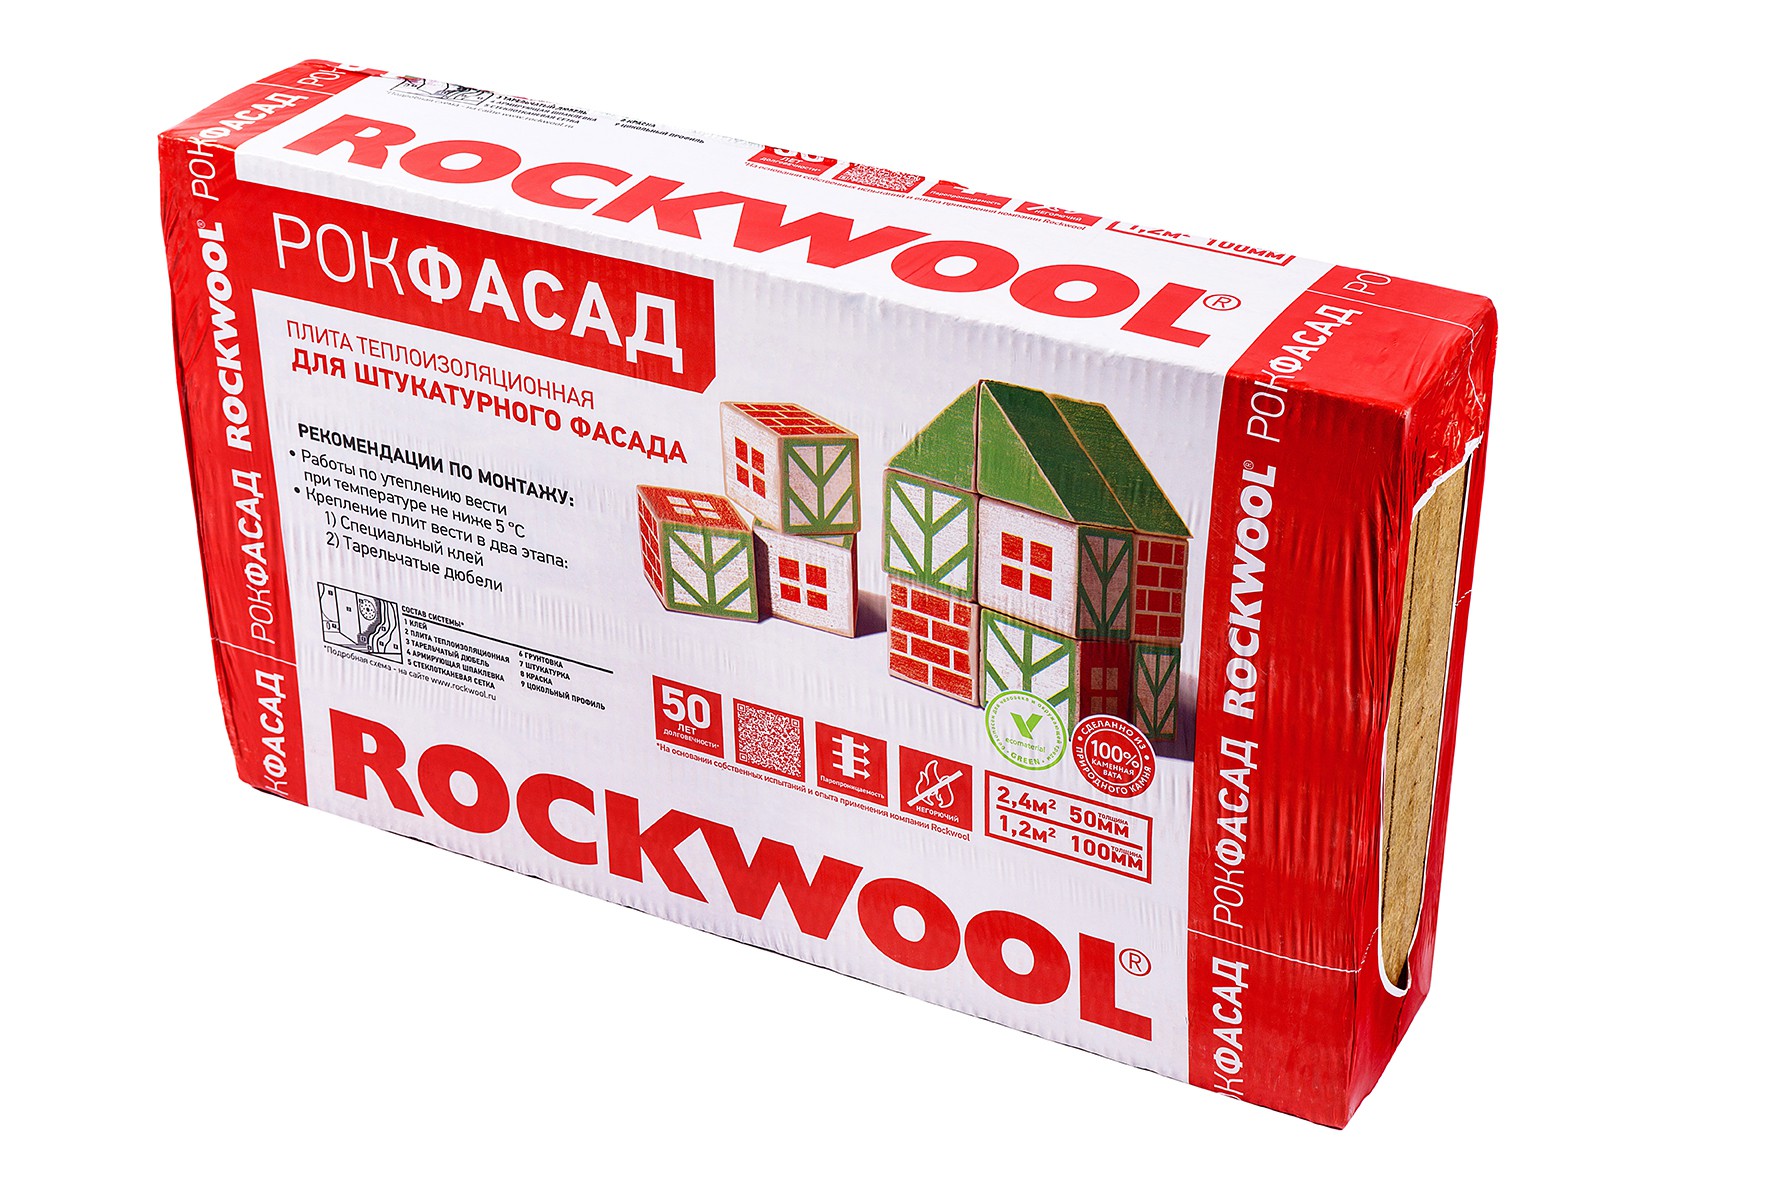 Минеральная вата Rockwool Рокфасад 1000х600х100 мм 2 шт 1.2 м2, цена .